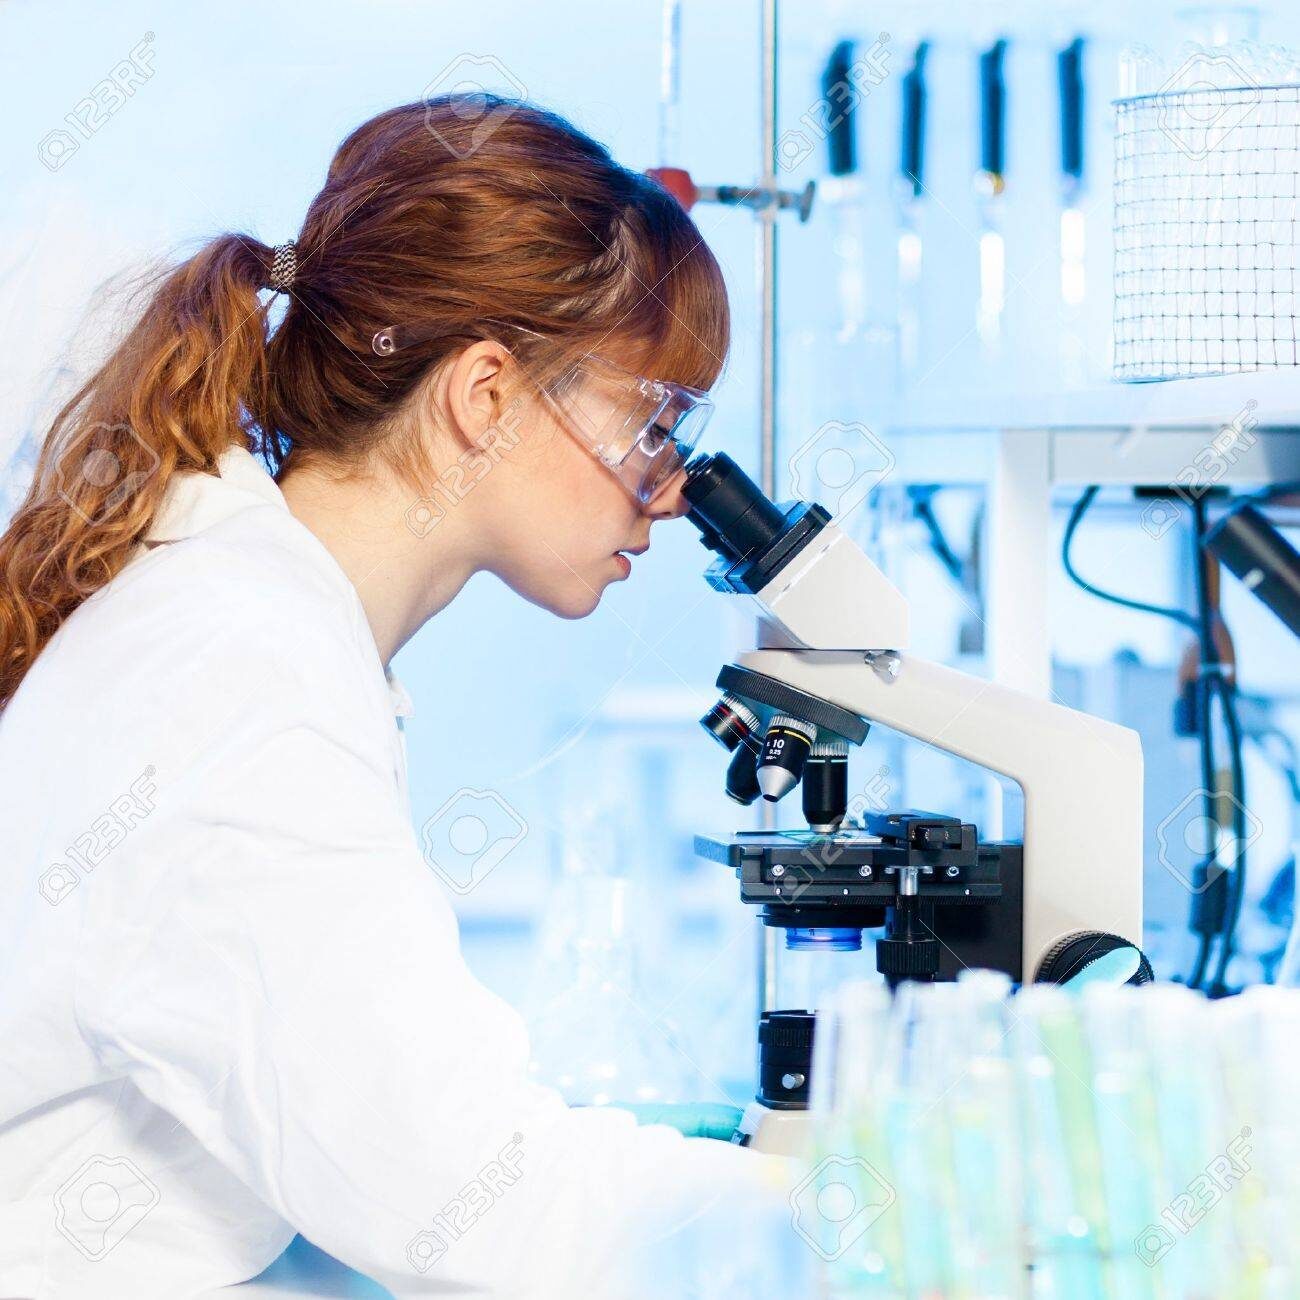 19800228-attractive-jeune-chercheur-femme-regardant-la-lame-de-microscope-en-sciences-de-la-vie-médecine-légale-d.jpg